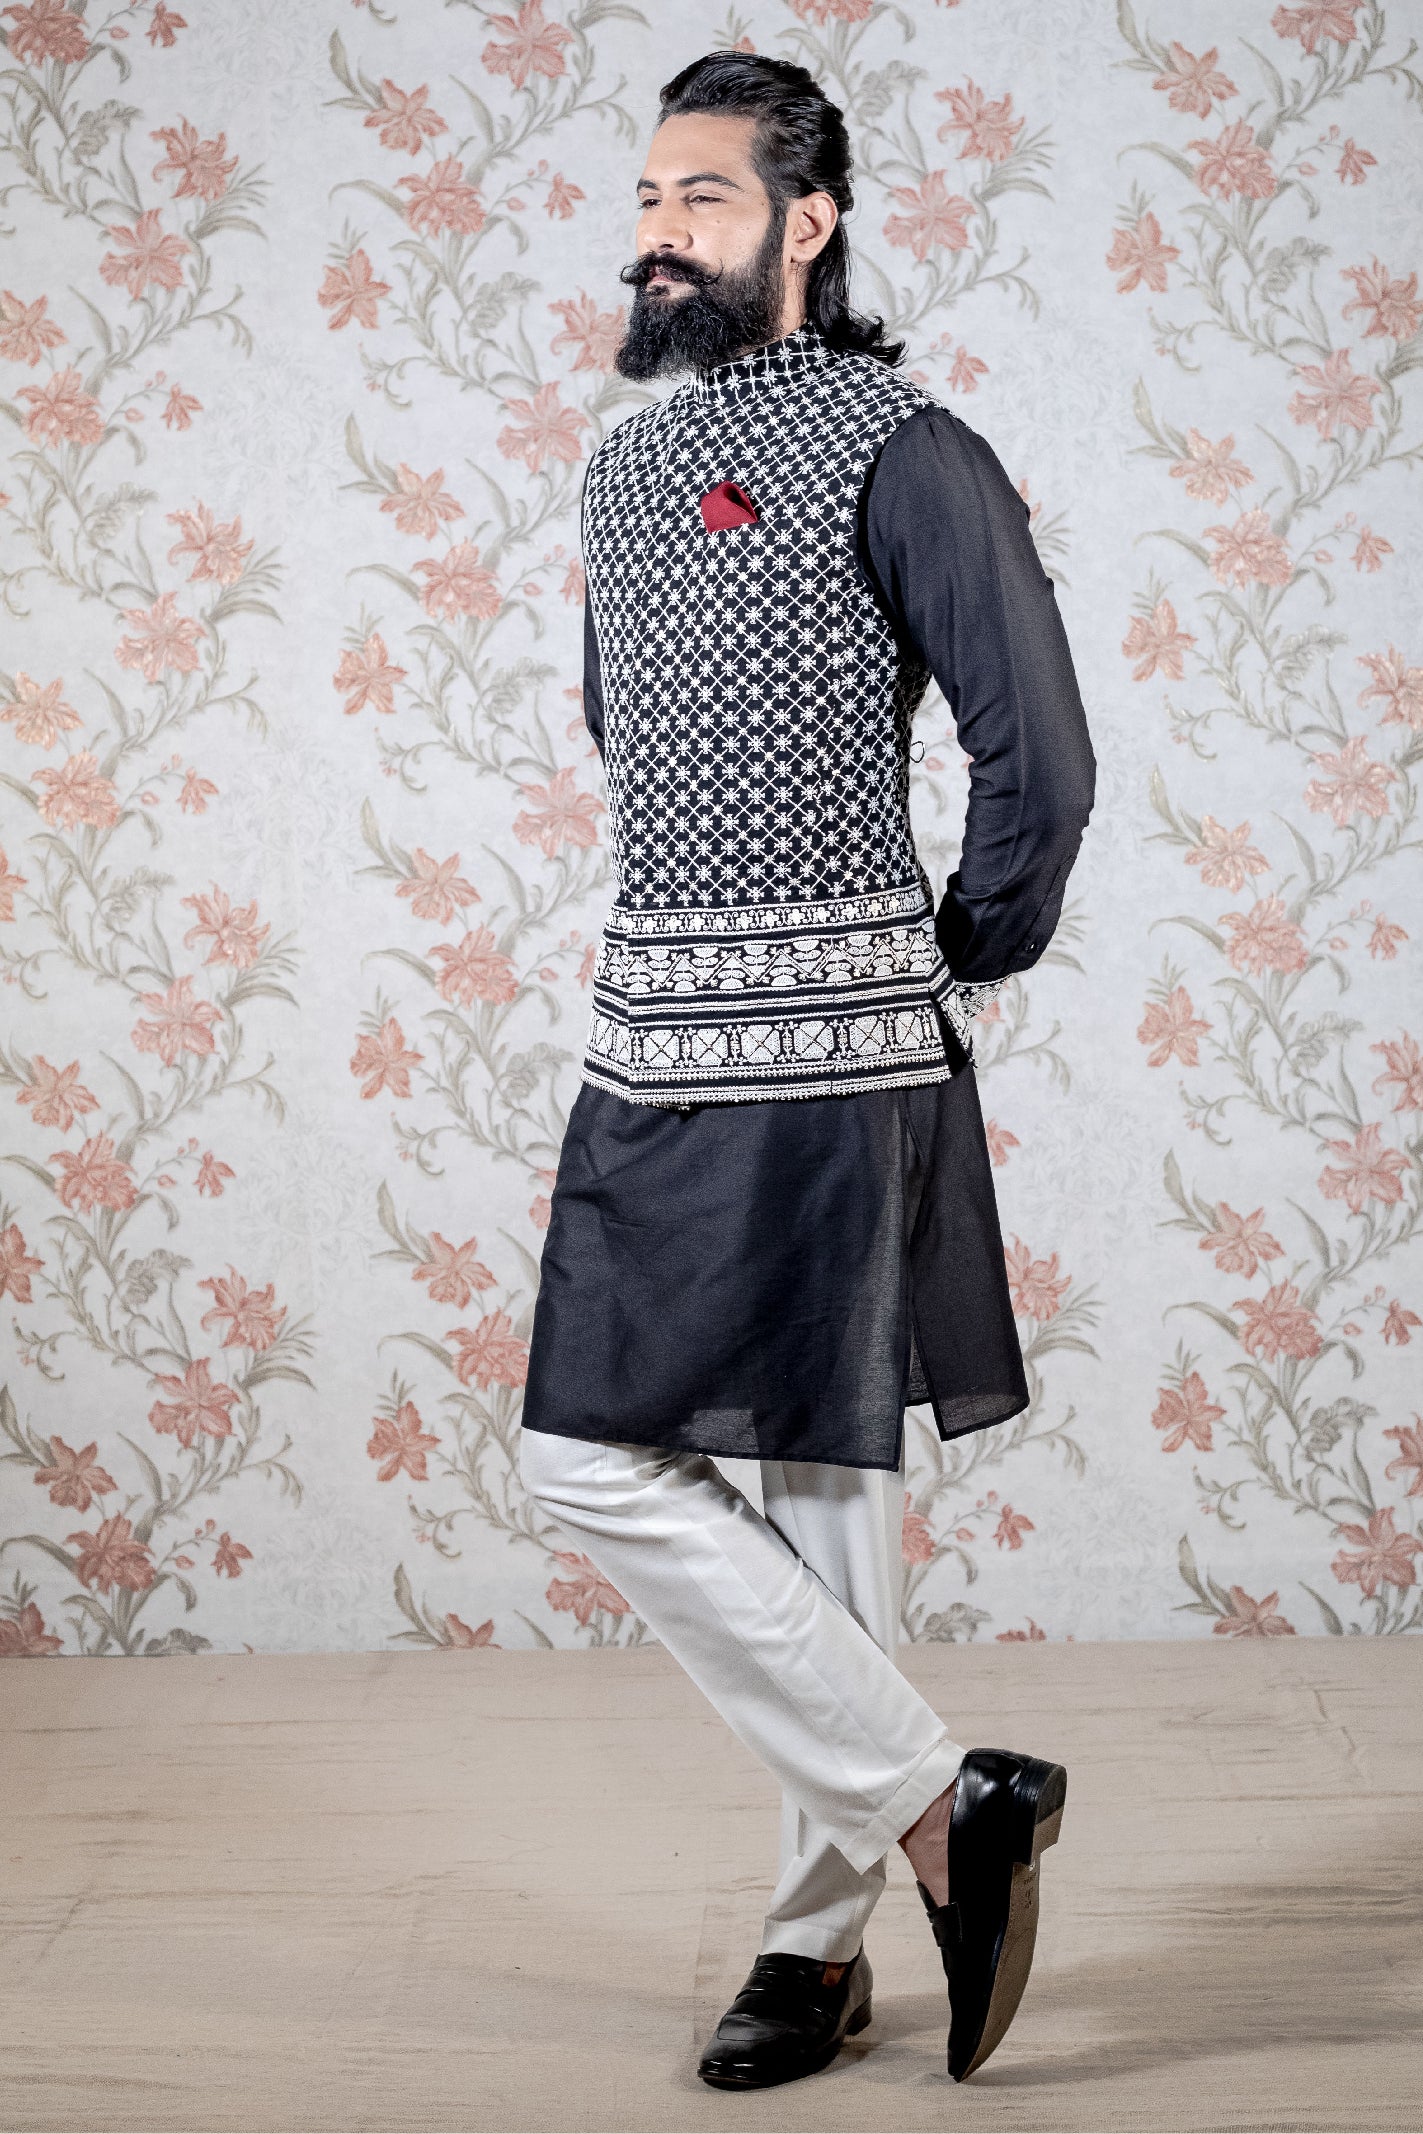 Gold Color Modi Nehru Jacket For Men | Gold color Mens Jacket | Jacket for  Kurta | Gift For Him | Wedding Kurta Jackets | Kaash Collection